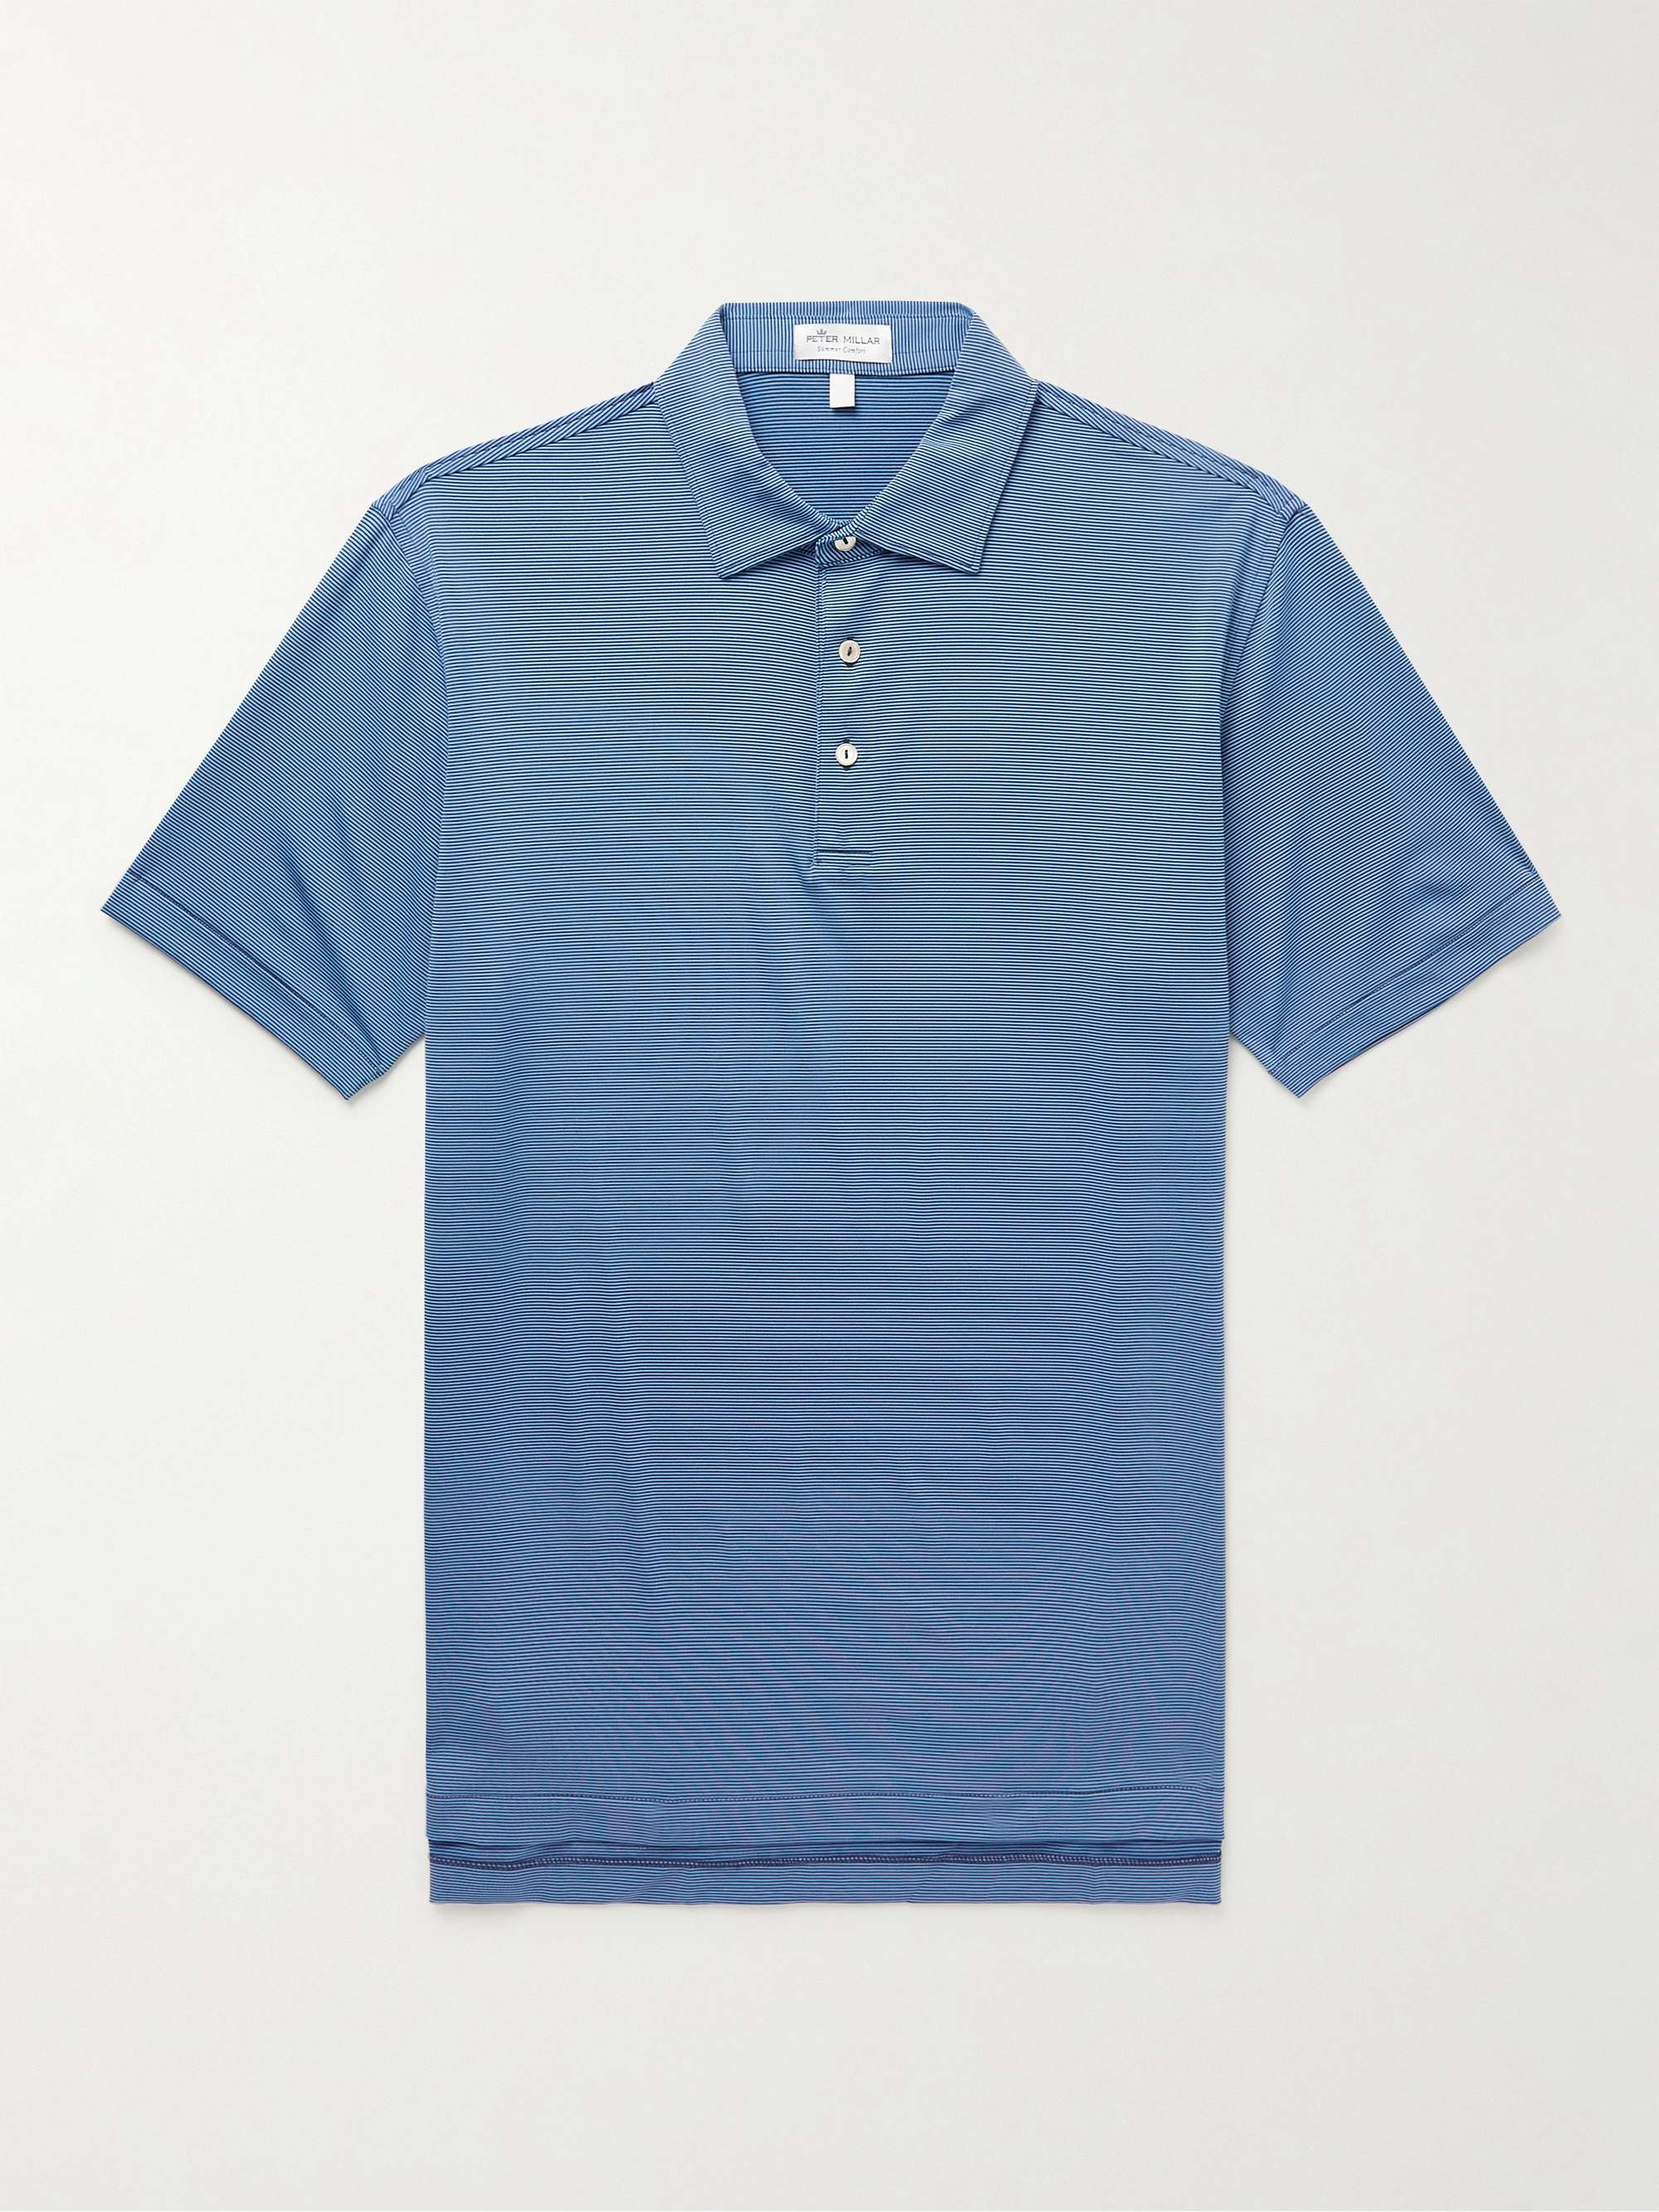 PETER MILLAR Jubilee Striped Tech-Jersey Golf Polo Shirt